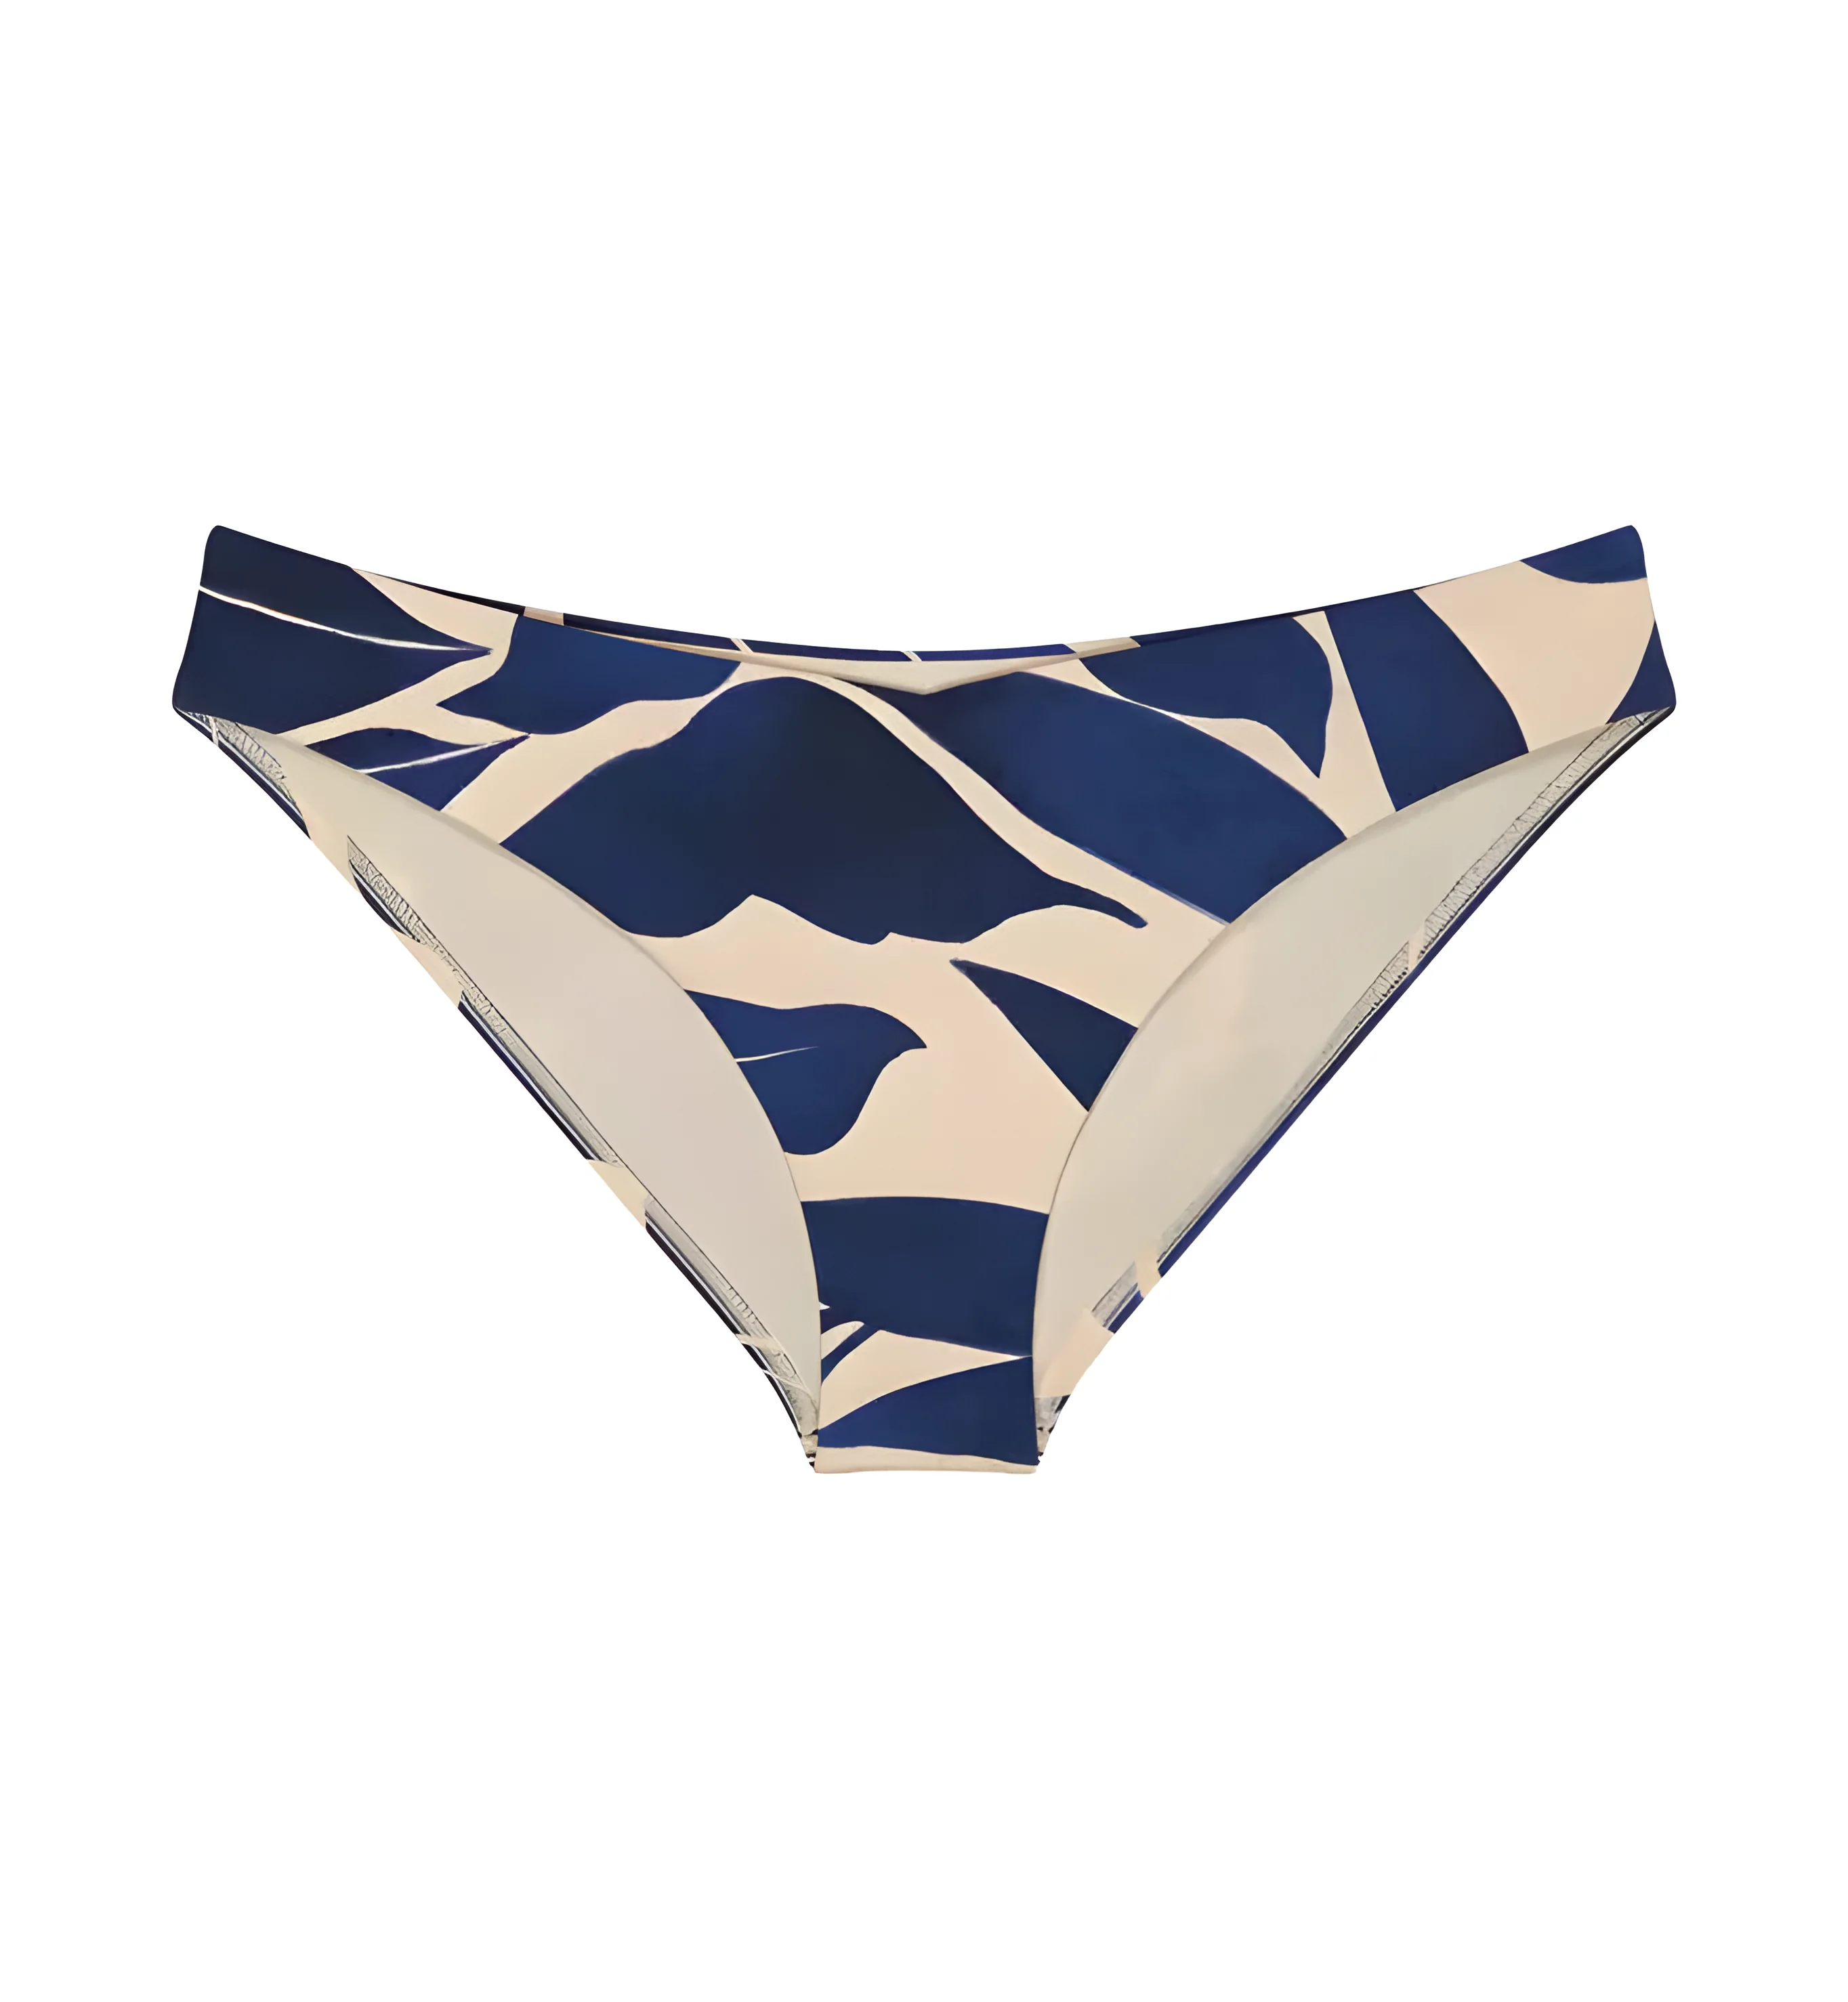 Dámské plavkové kalhotky Summer Allure Rio Brief - Triumph světlá kombinace modré (M007) 0036